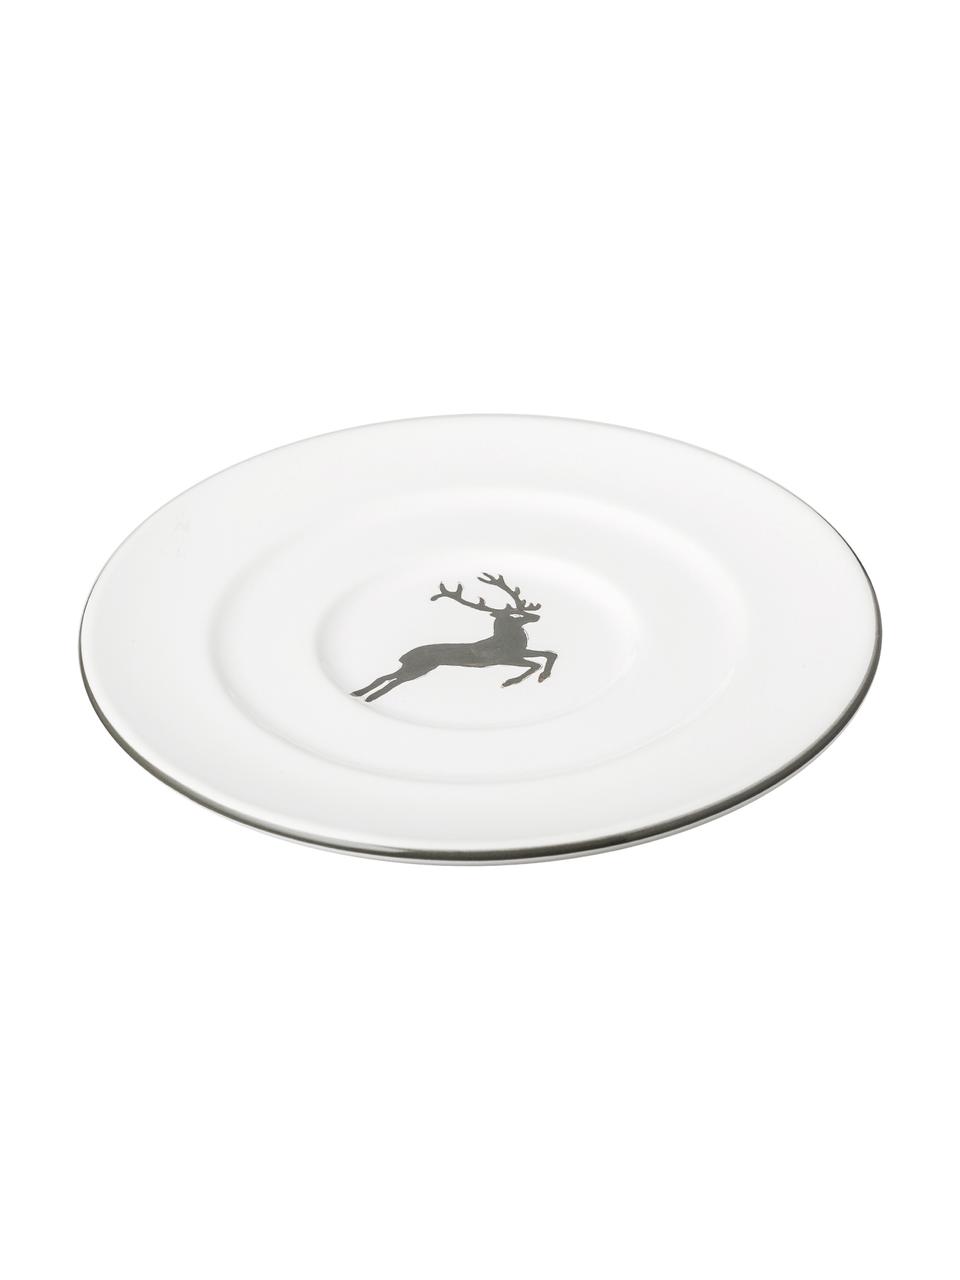 Sous-tasse en céramique artisanale Cerf Gris Gourmet, Céramique, Gris, blanc, Ø 16 cm